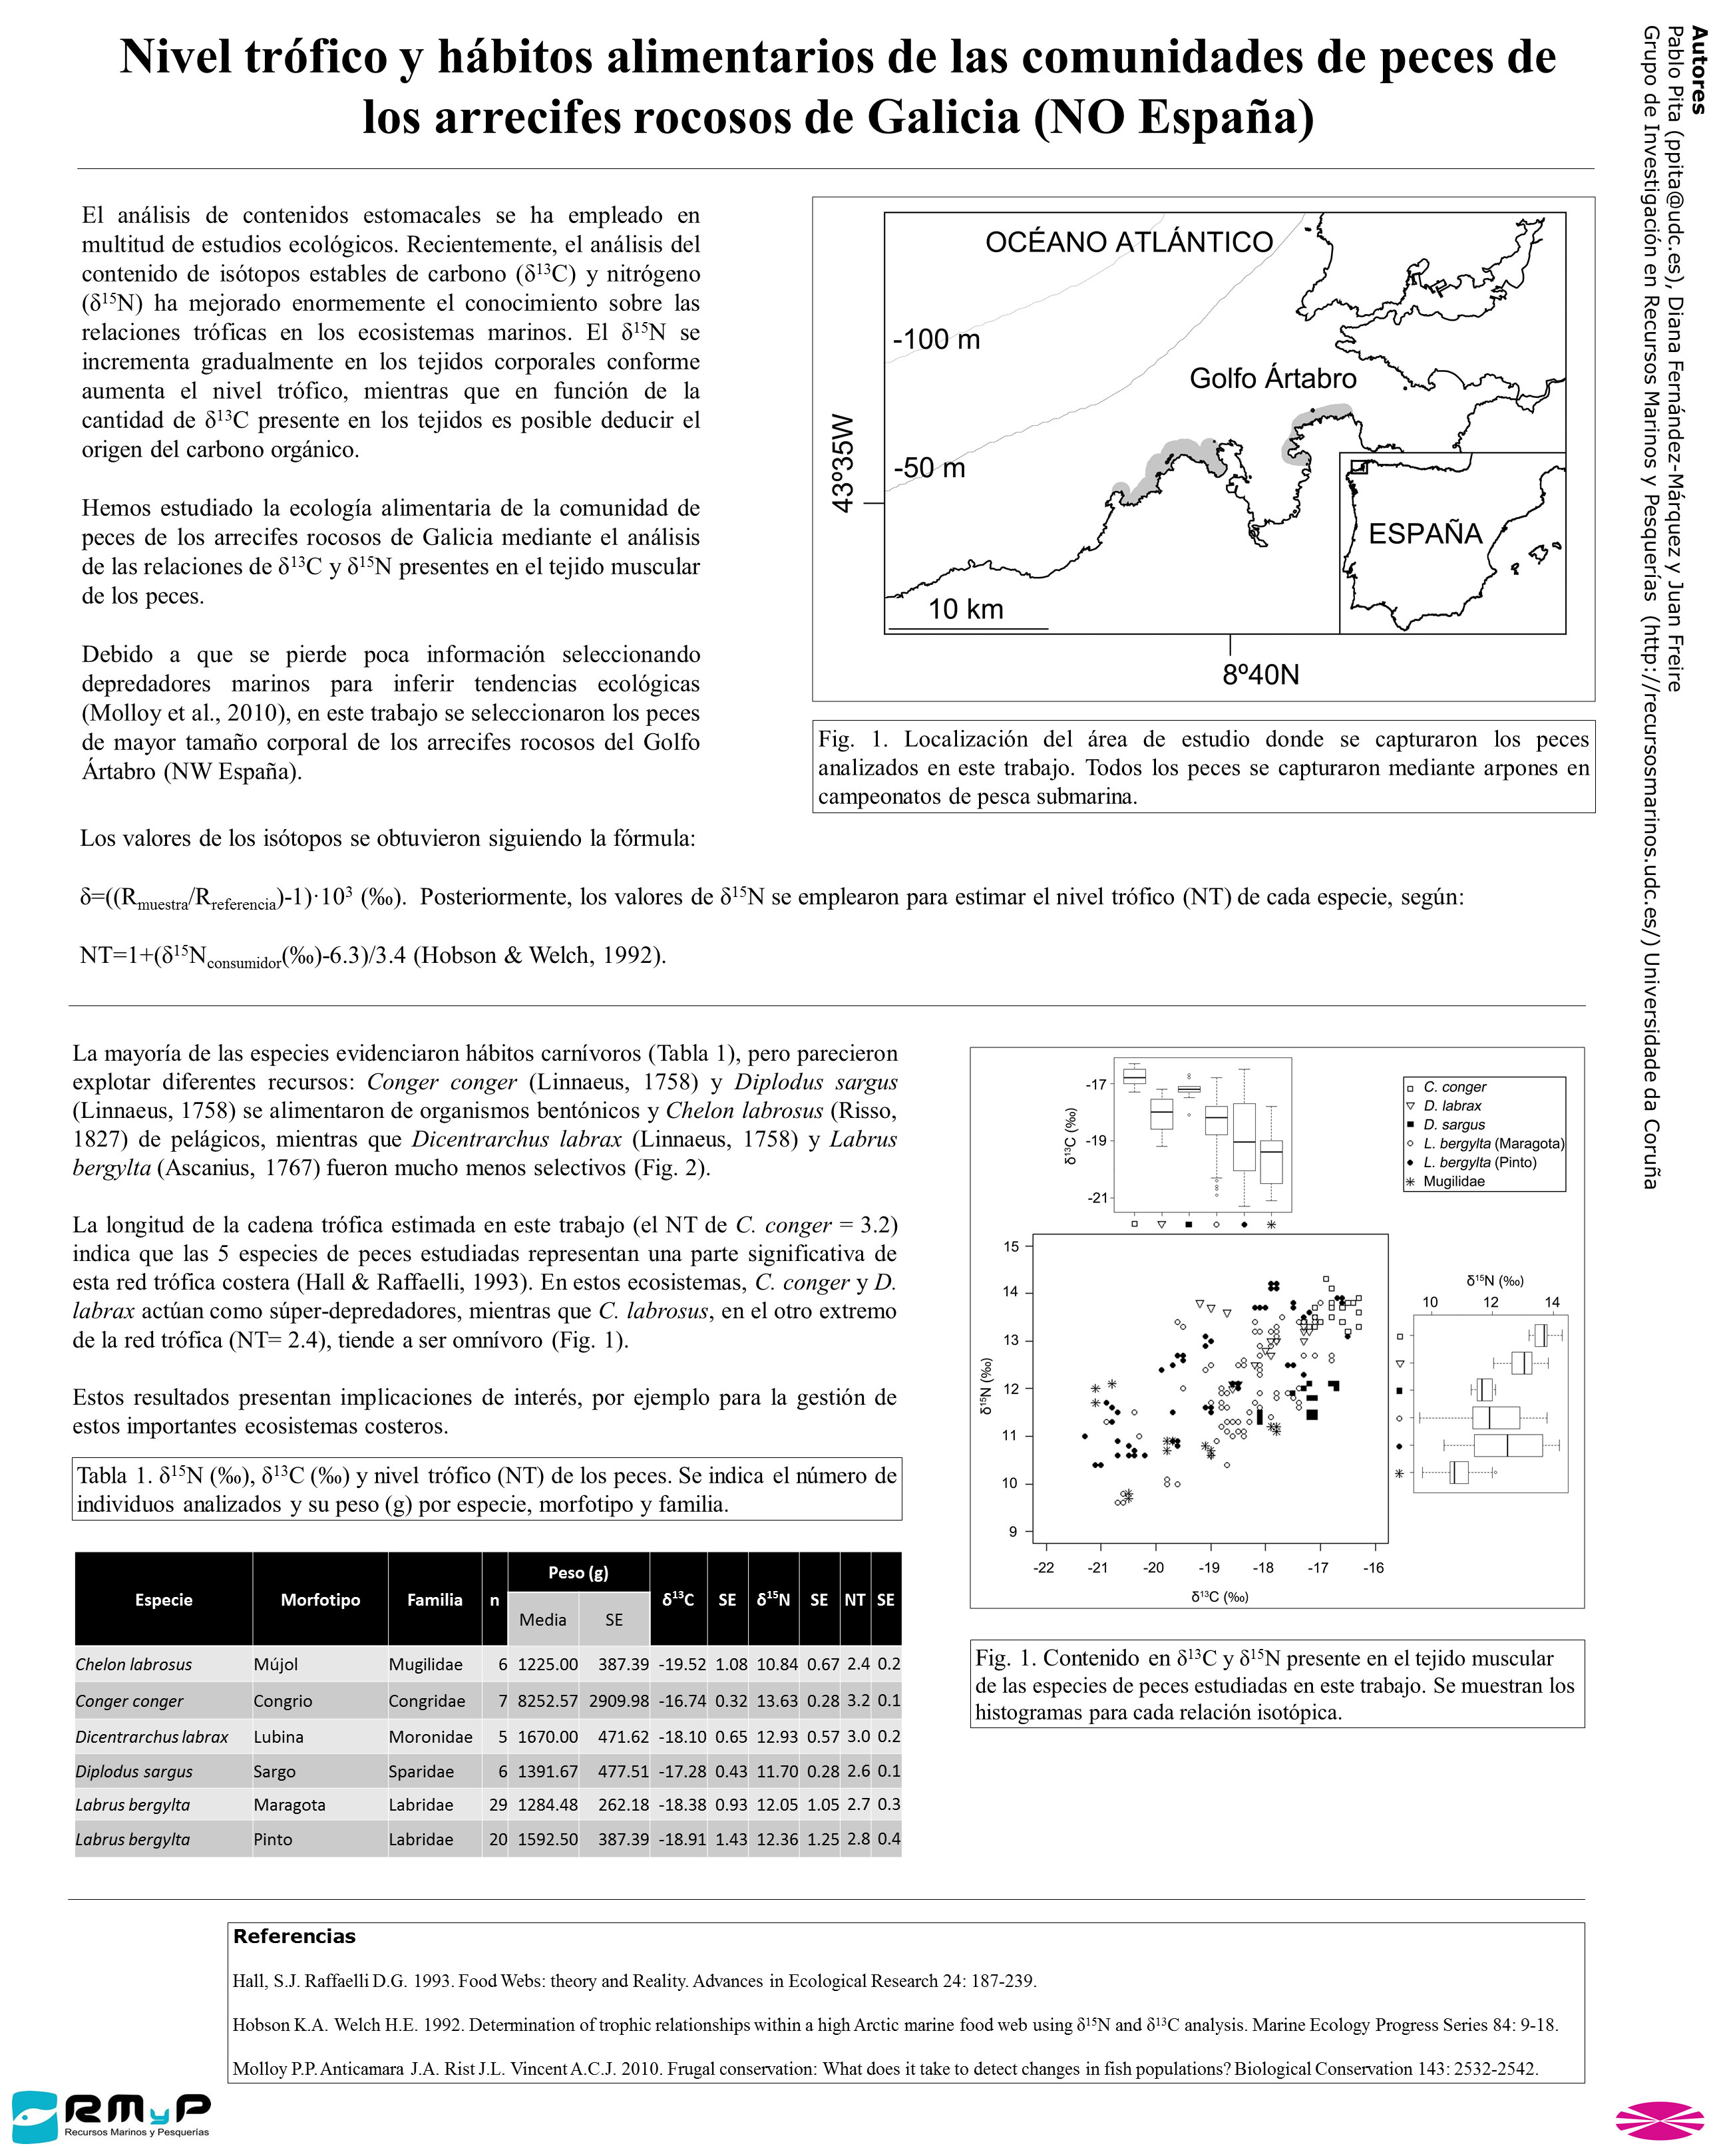 Nivel trófico y hábitos alimentarios de las comunidades de peces de los arrecifes rocosos de Galicia (NO España)